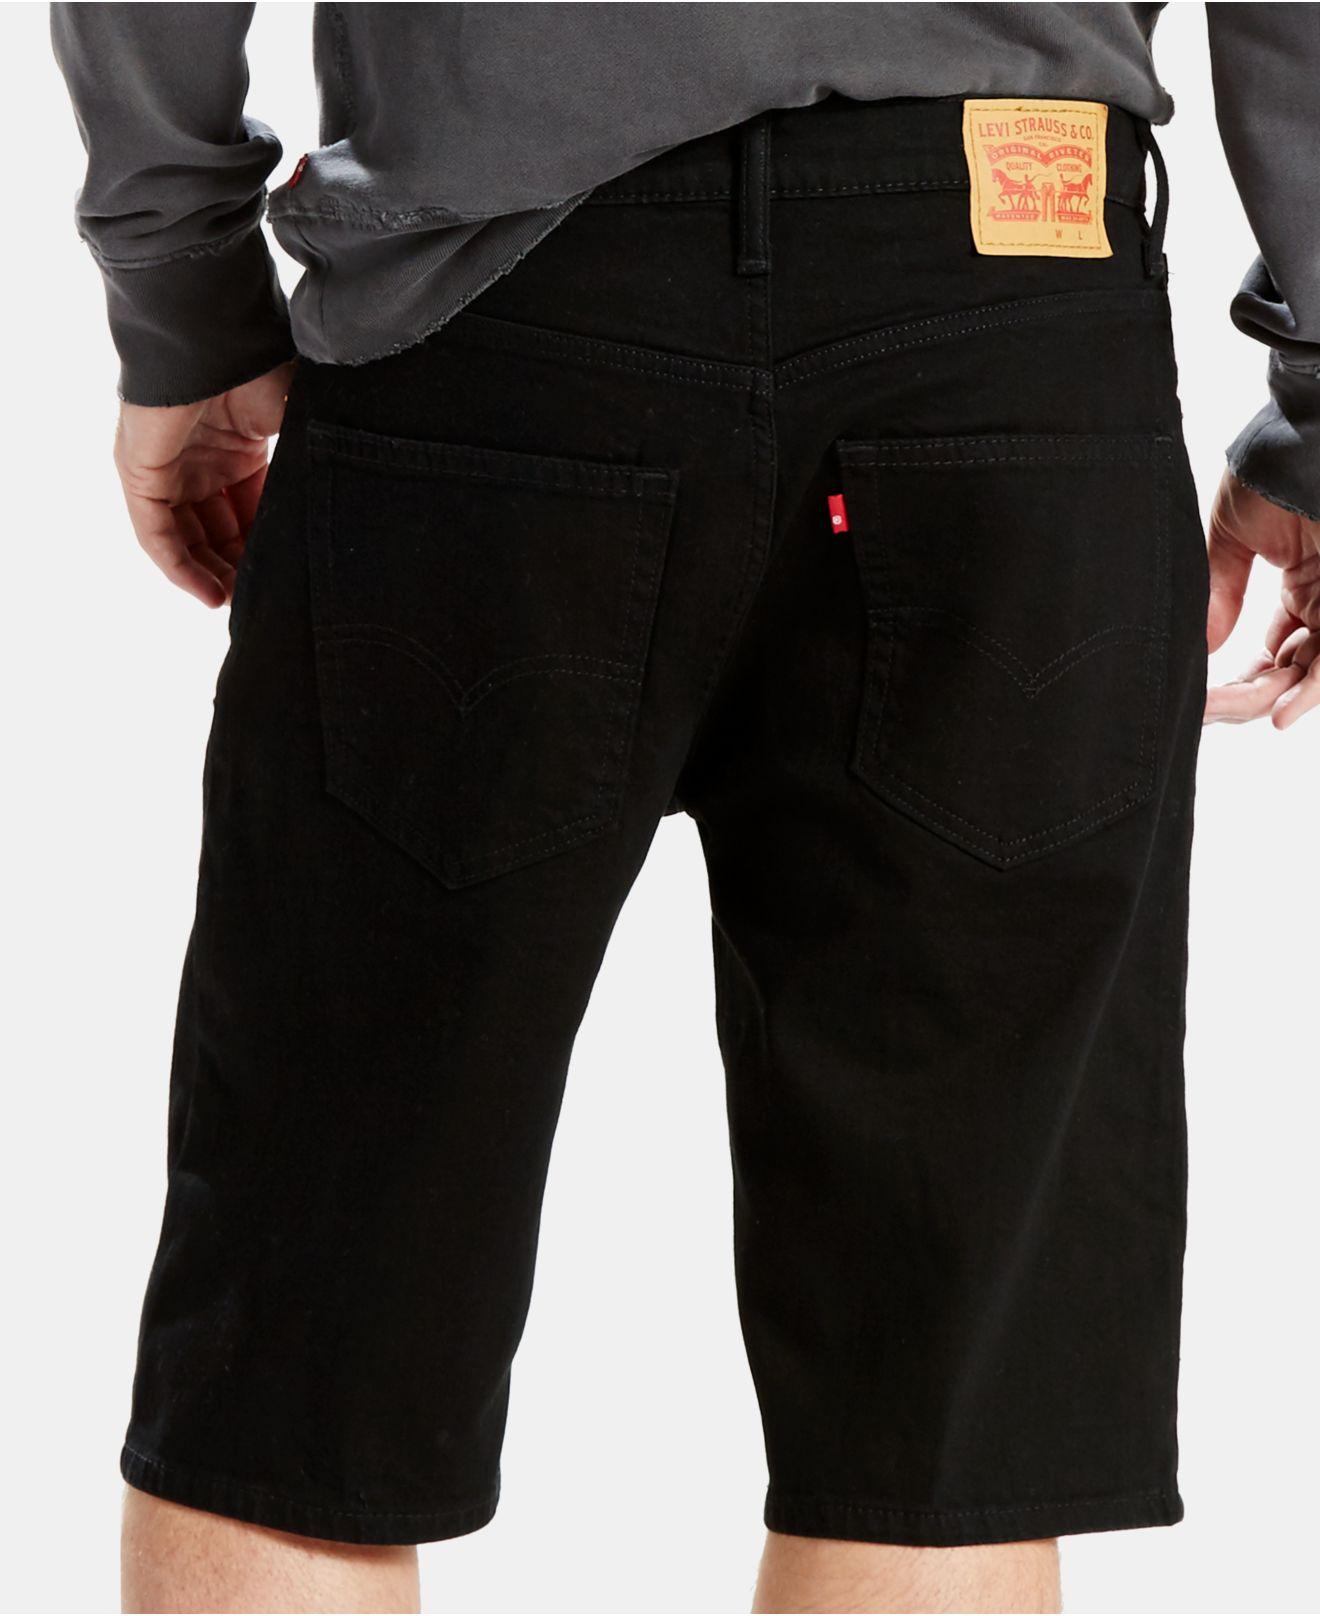 Levi's Denim 569 Loose-fit Shorts in Black for Men - Lyst